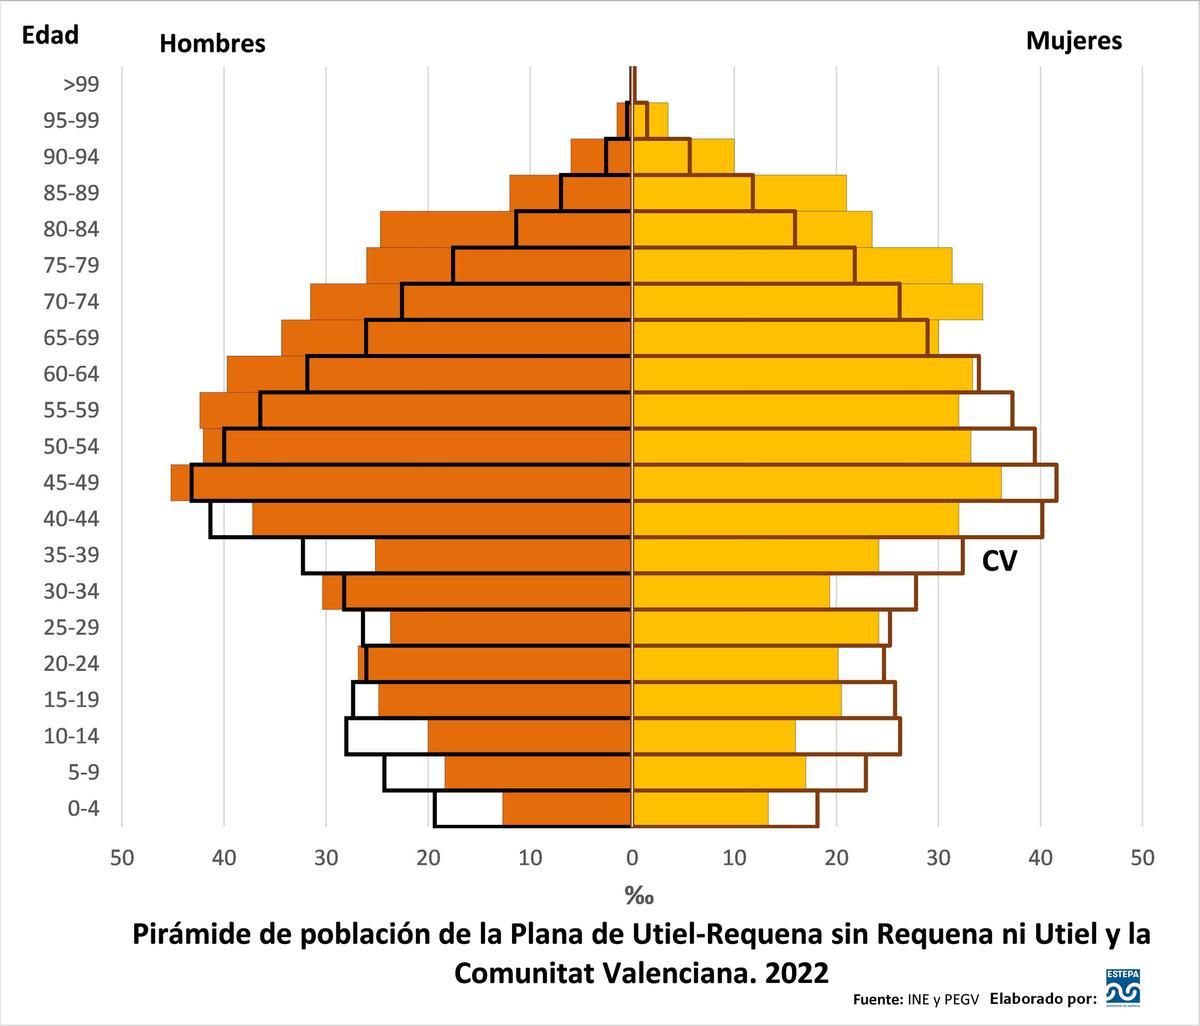 Pirámide de población de La Plana de Utiel-Requena sin Requena y Utiel y la Comunitat Valenciana. 2022